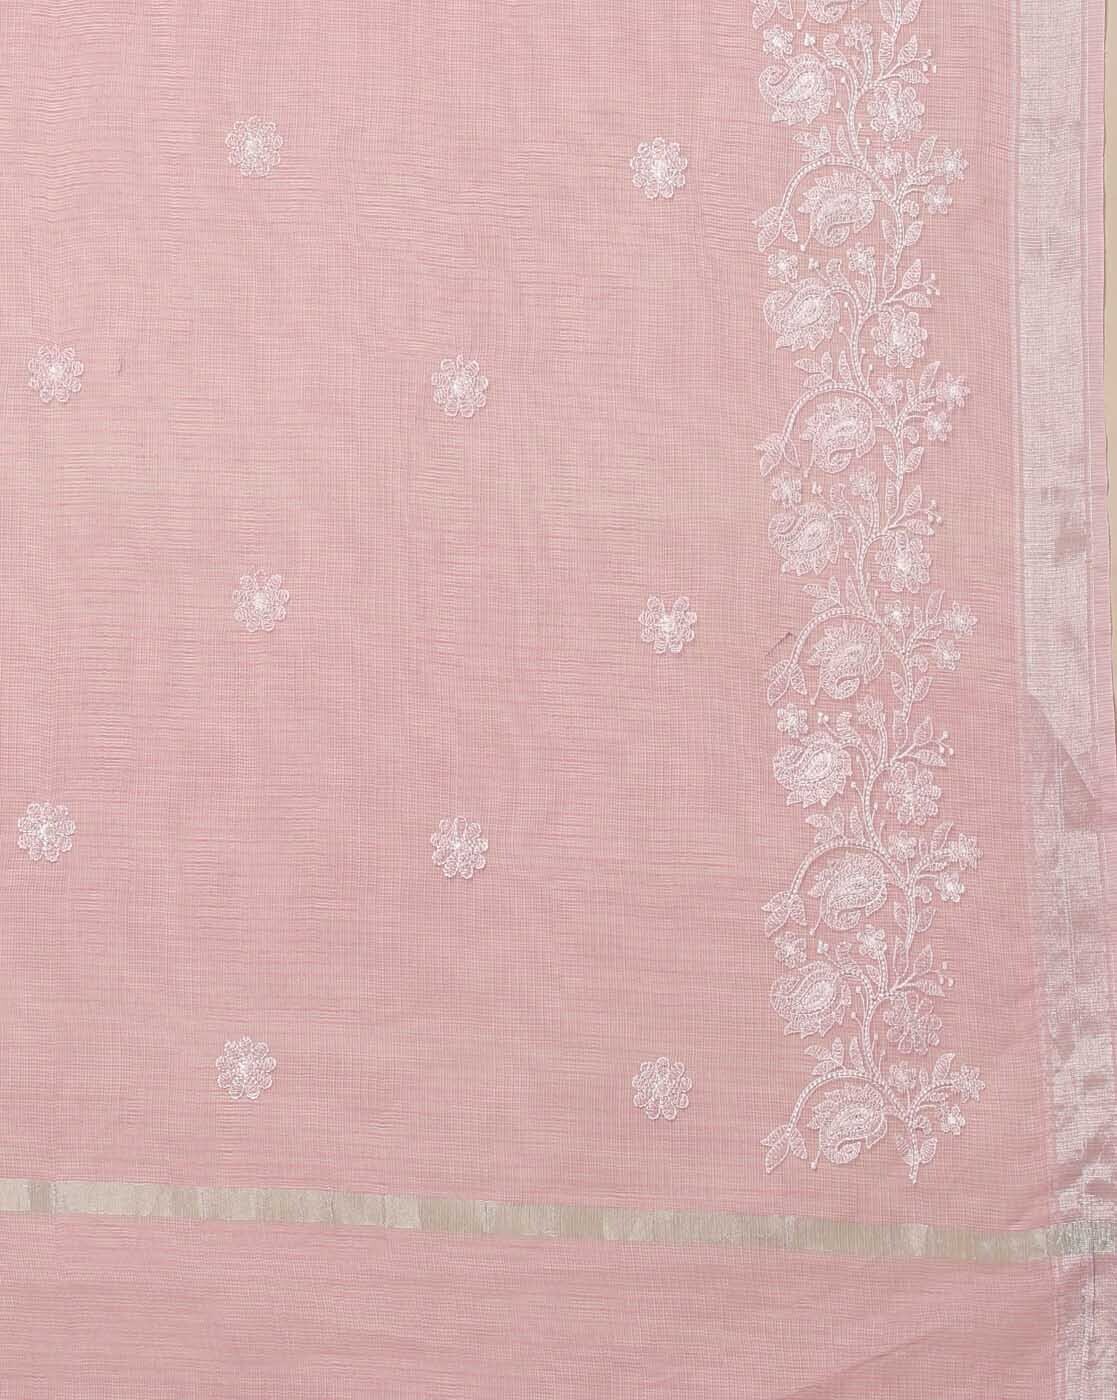 Pink Kota Cotton Saree, Candid Dil Ki Baat